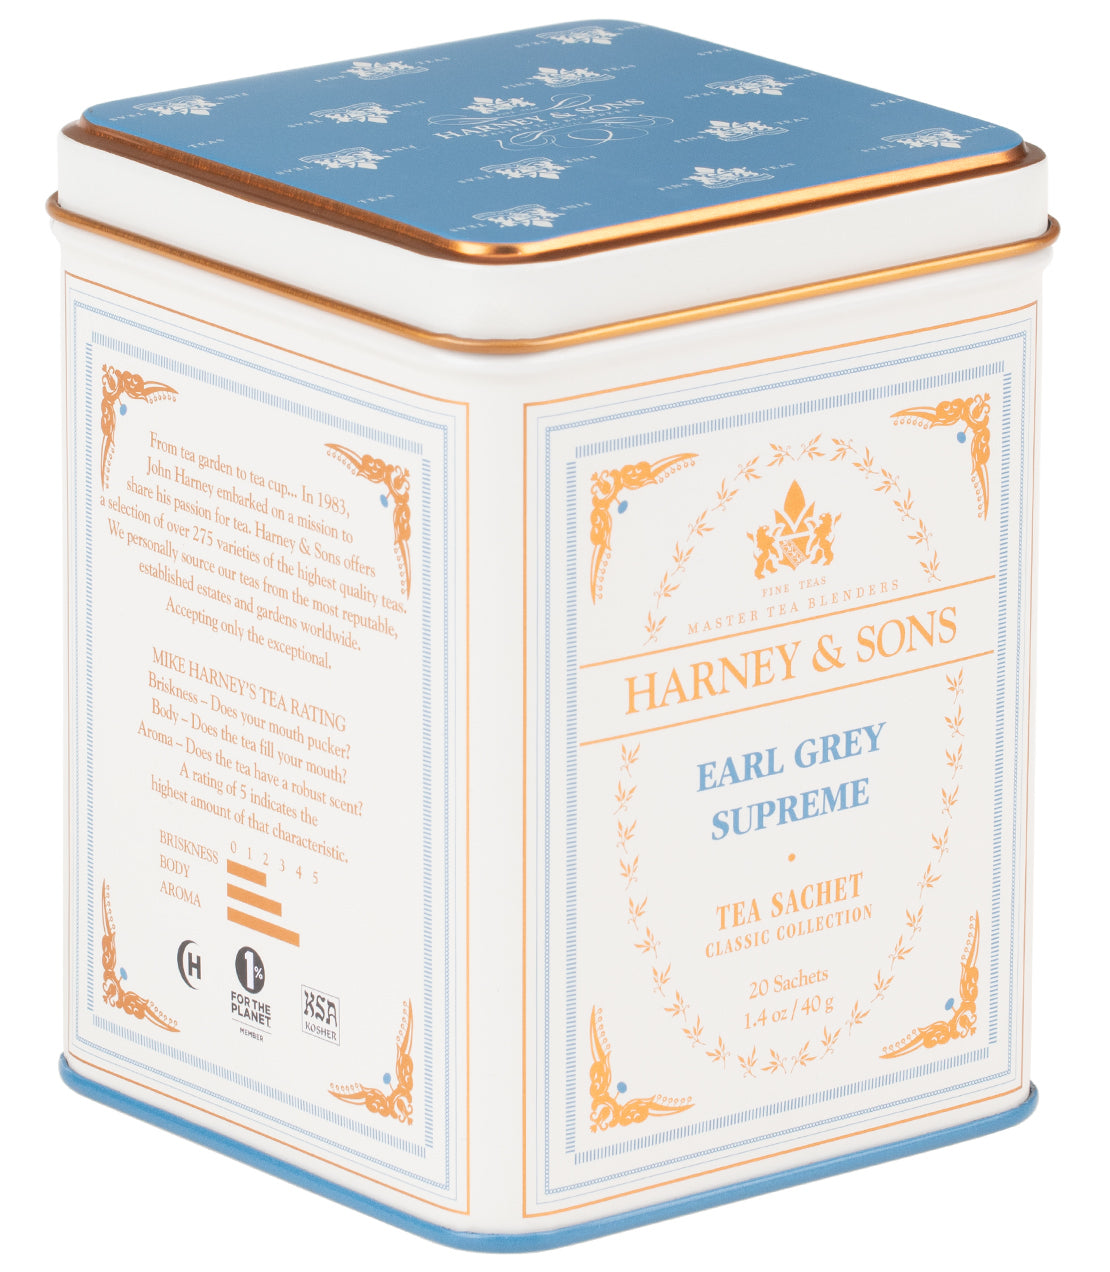 Earl Grey Supreme,  Classic Tin of 20 Sachets - Sachets Single Classic Tin of 20 Sachets - Harney & Sons Fine Teas